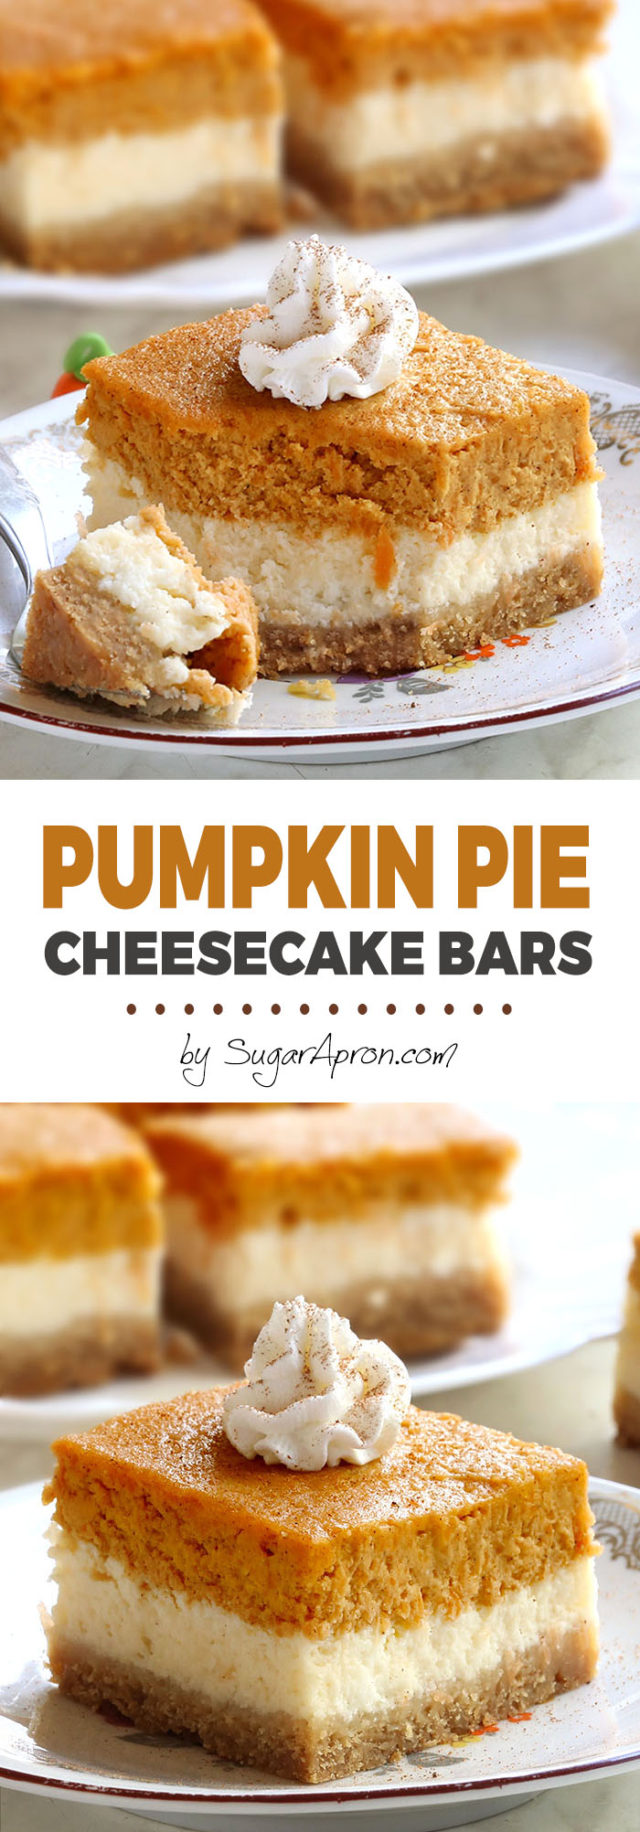 Pumpkin Pie Cheesecake Bars - Sugar Apron